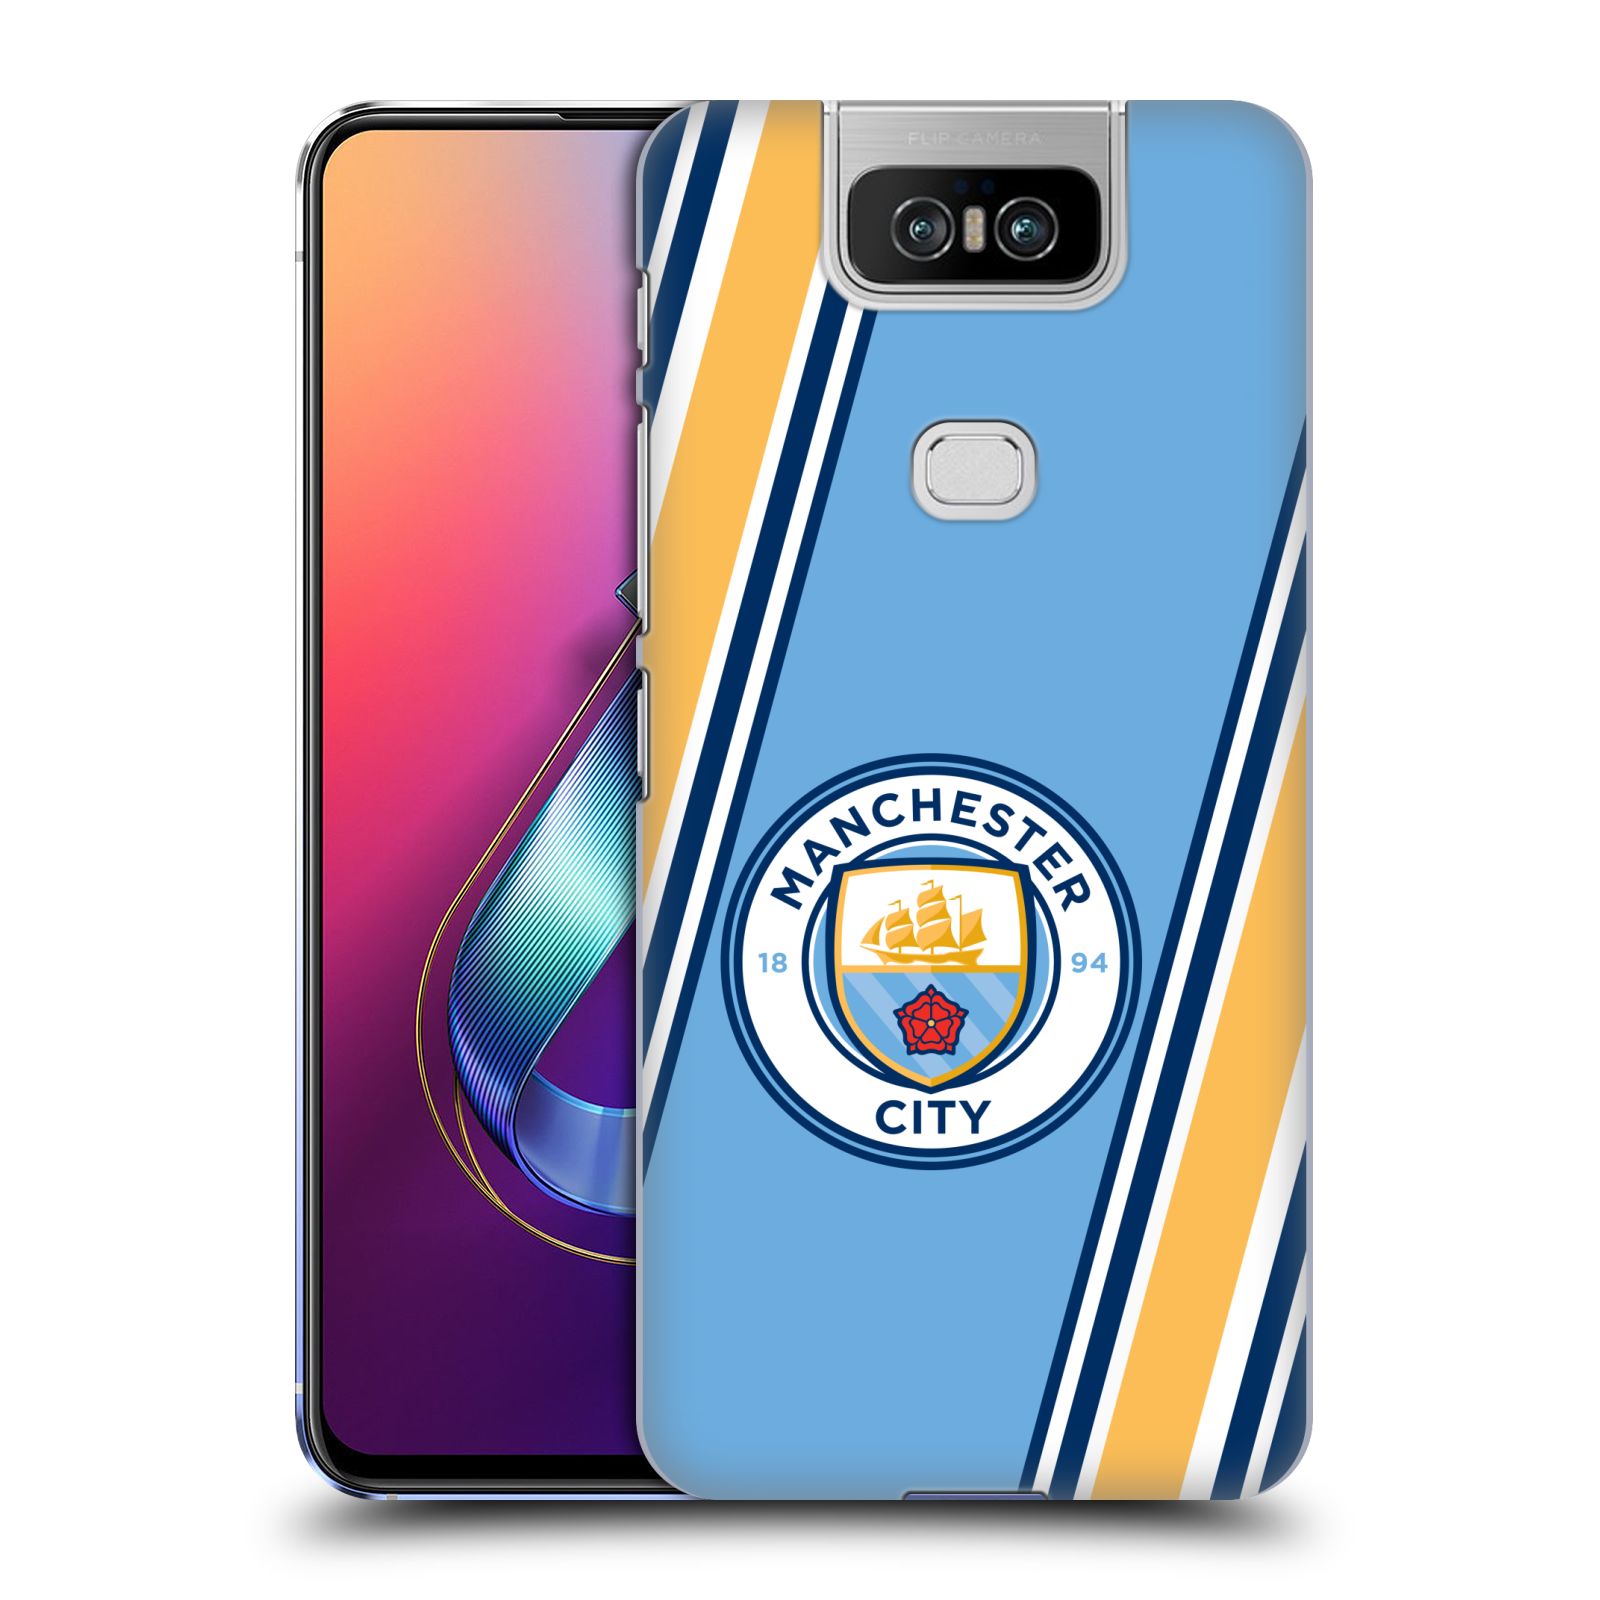 Pouzdro na mobil Asus Zenfone 6 ZS630KL - HEAD CASE - Fotbalový klub Manchester City modrá barva žluté pruhy